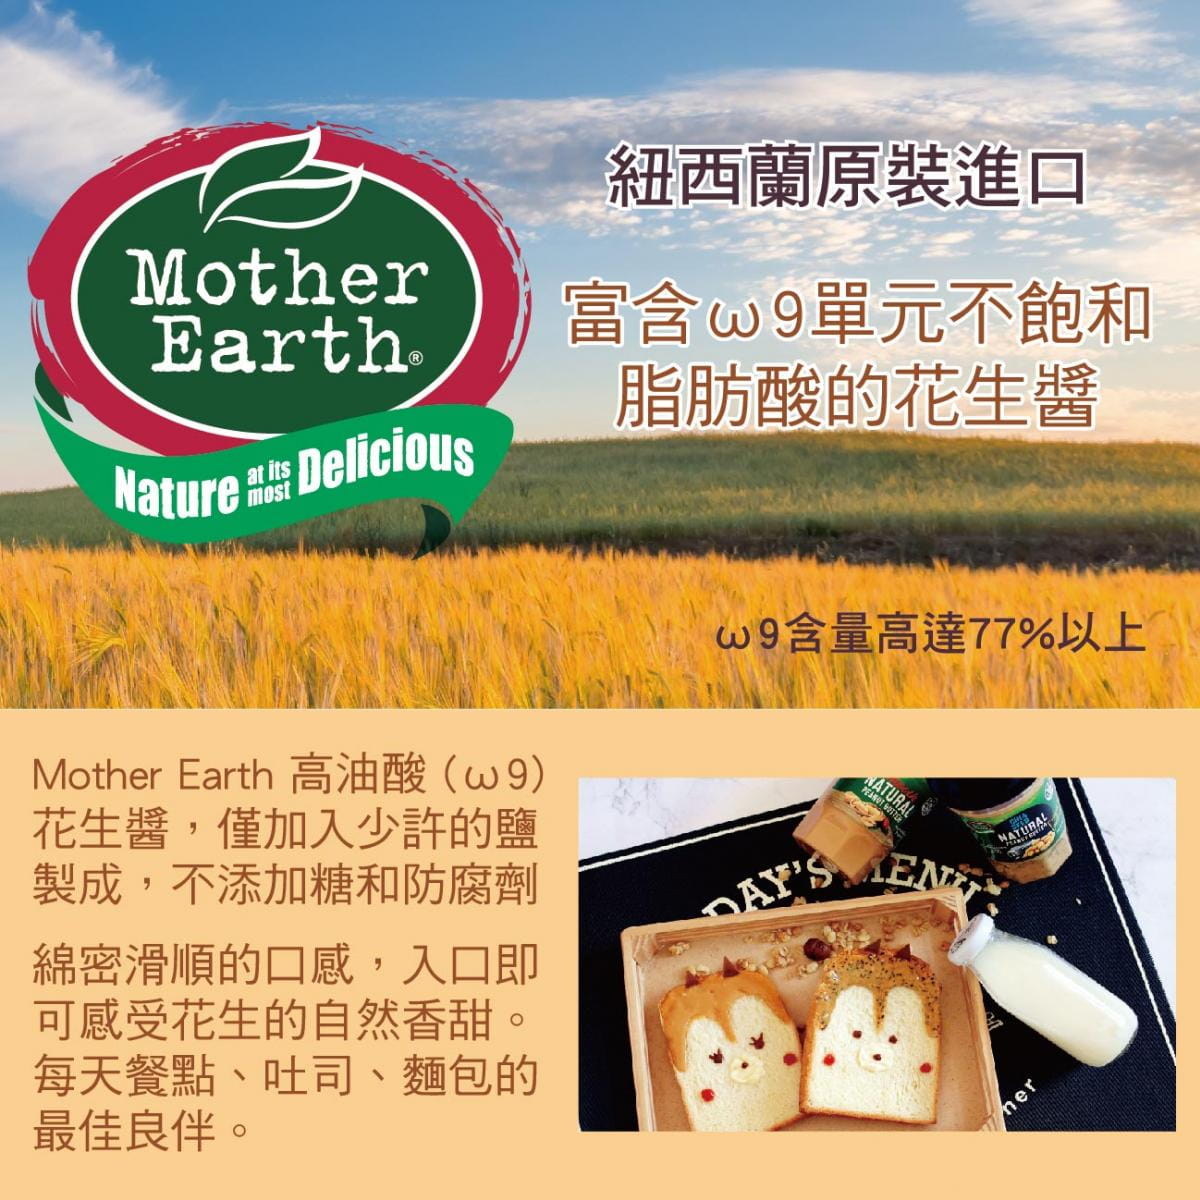 【紐西蘭 Mother Earth】【即期品】高油酸花生醬 - 搭贈「營養棒」試吃 1